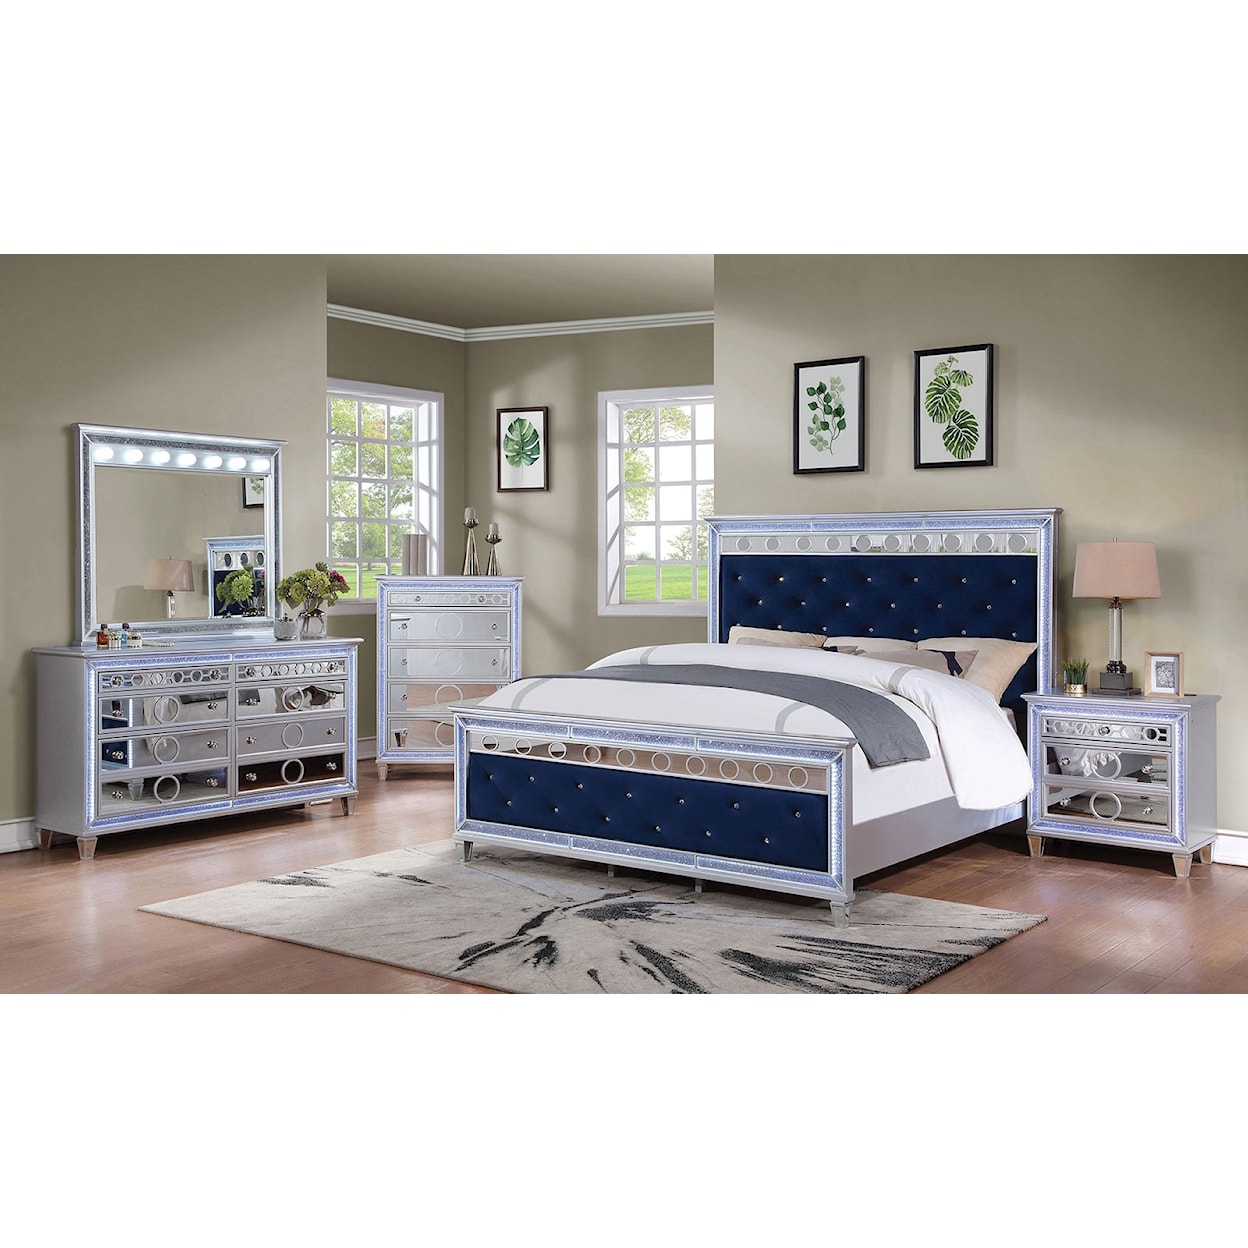 Furniture of America Mairead 5-Piece Queen Bedroom Set with 2 Nightstands